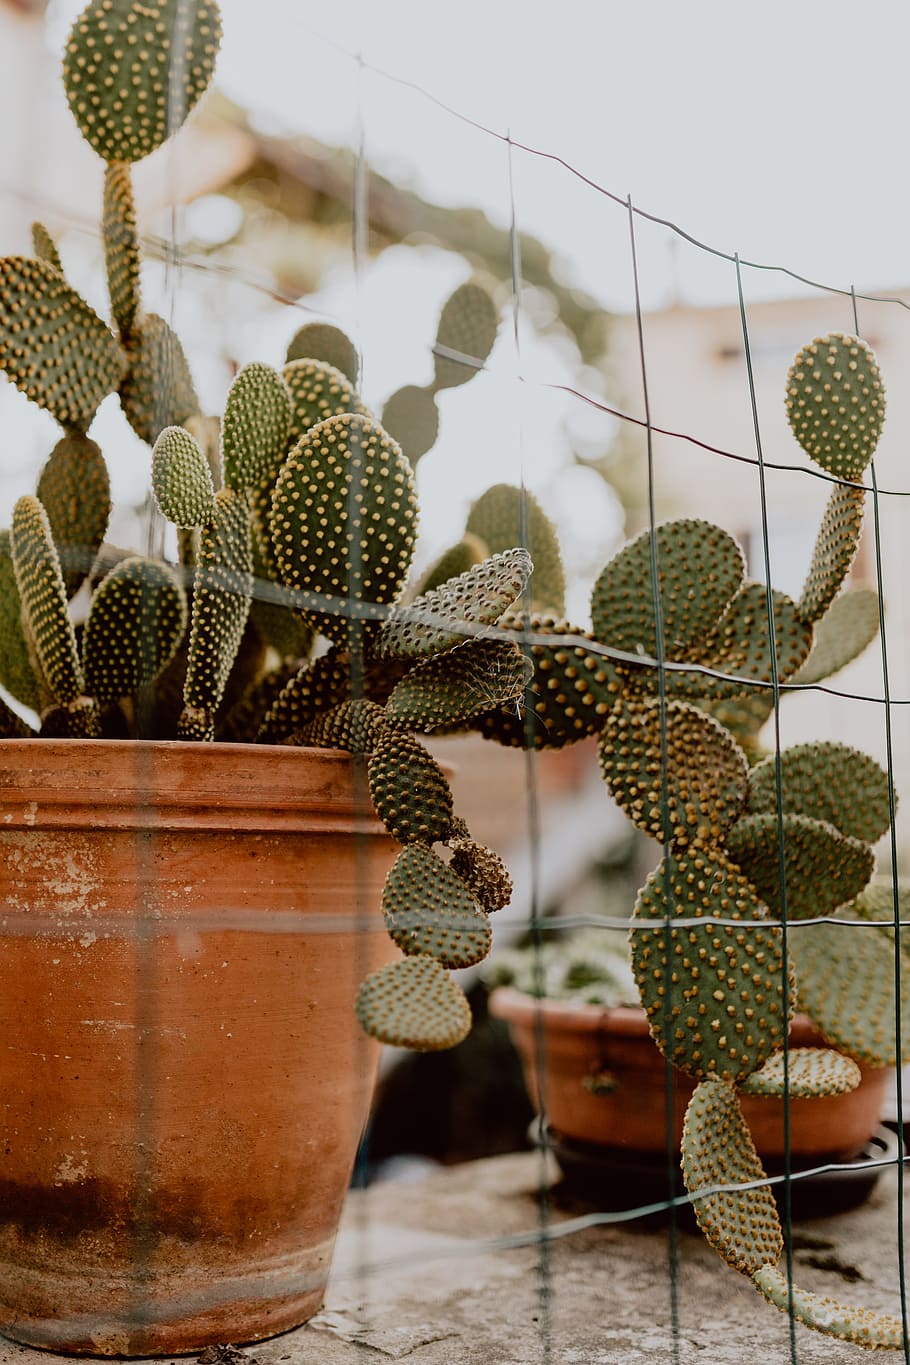 Opuntia in a ceramic pot, cactus, cacti, Prickly pear, plant